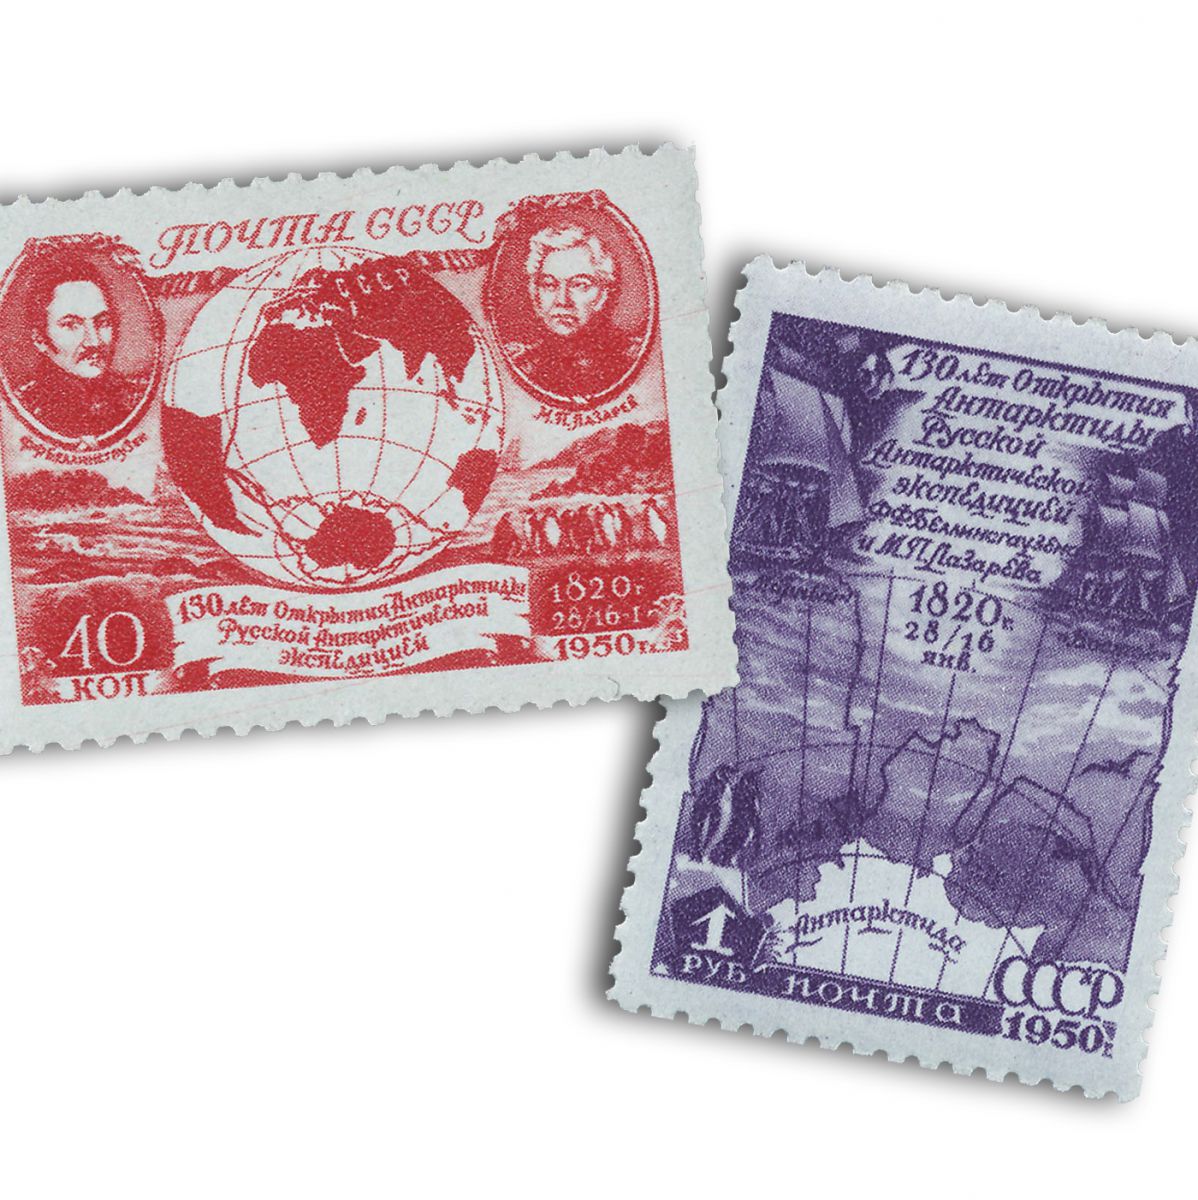 Открытие Антарктиды Беллинсгаузен Лазарев 28 января 1820 на почтовых марках